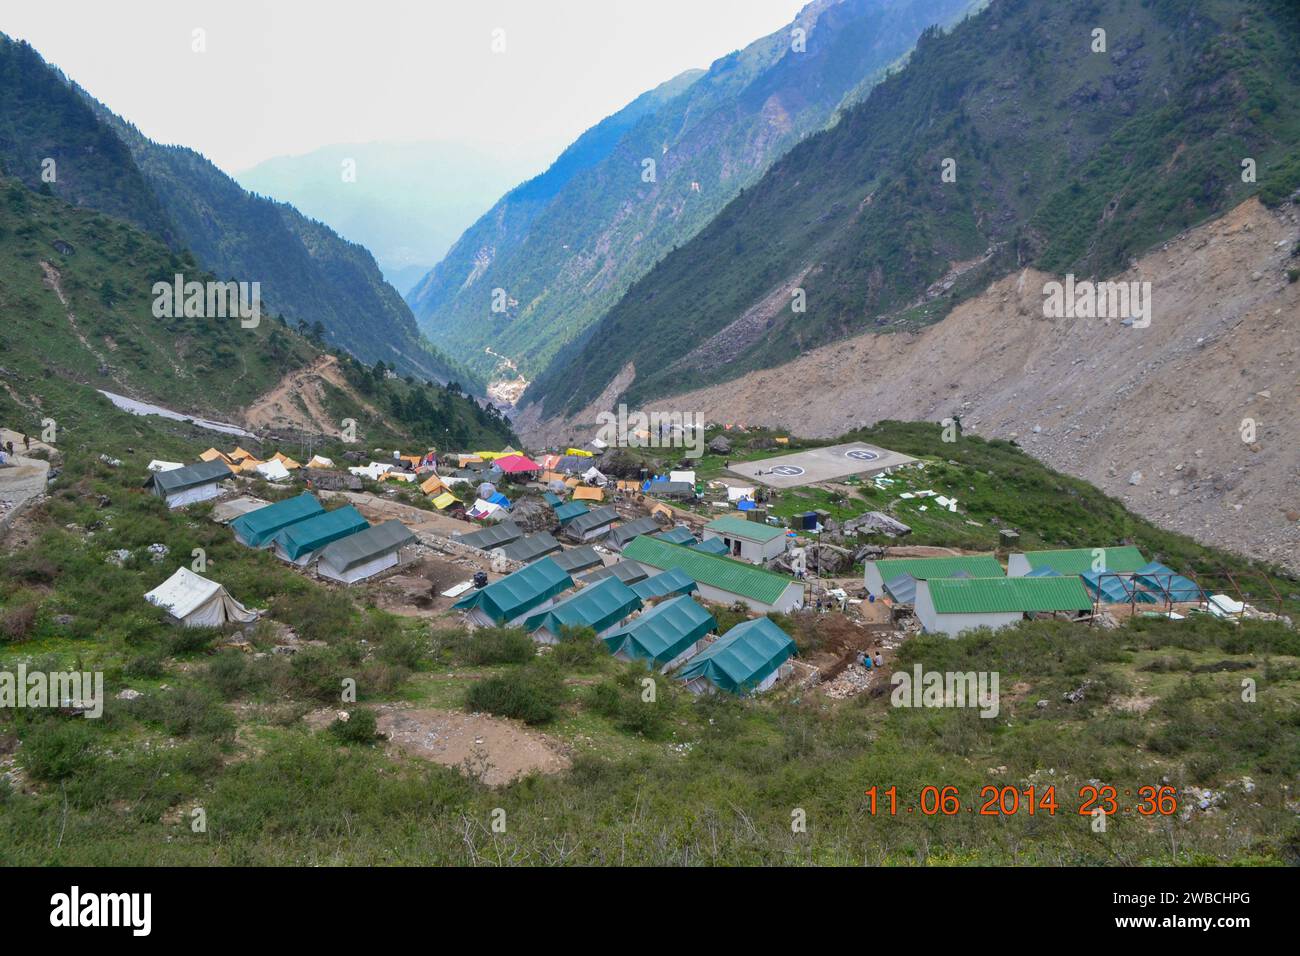 Kedarnath base camp established after Kedarnath disaster. In June 2013, a multi-day cloudburst centered on the North Indian state of Uttarakhand caused devastating floods and landslides. Stock Photo